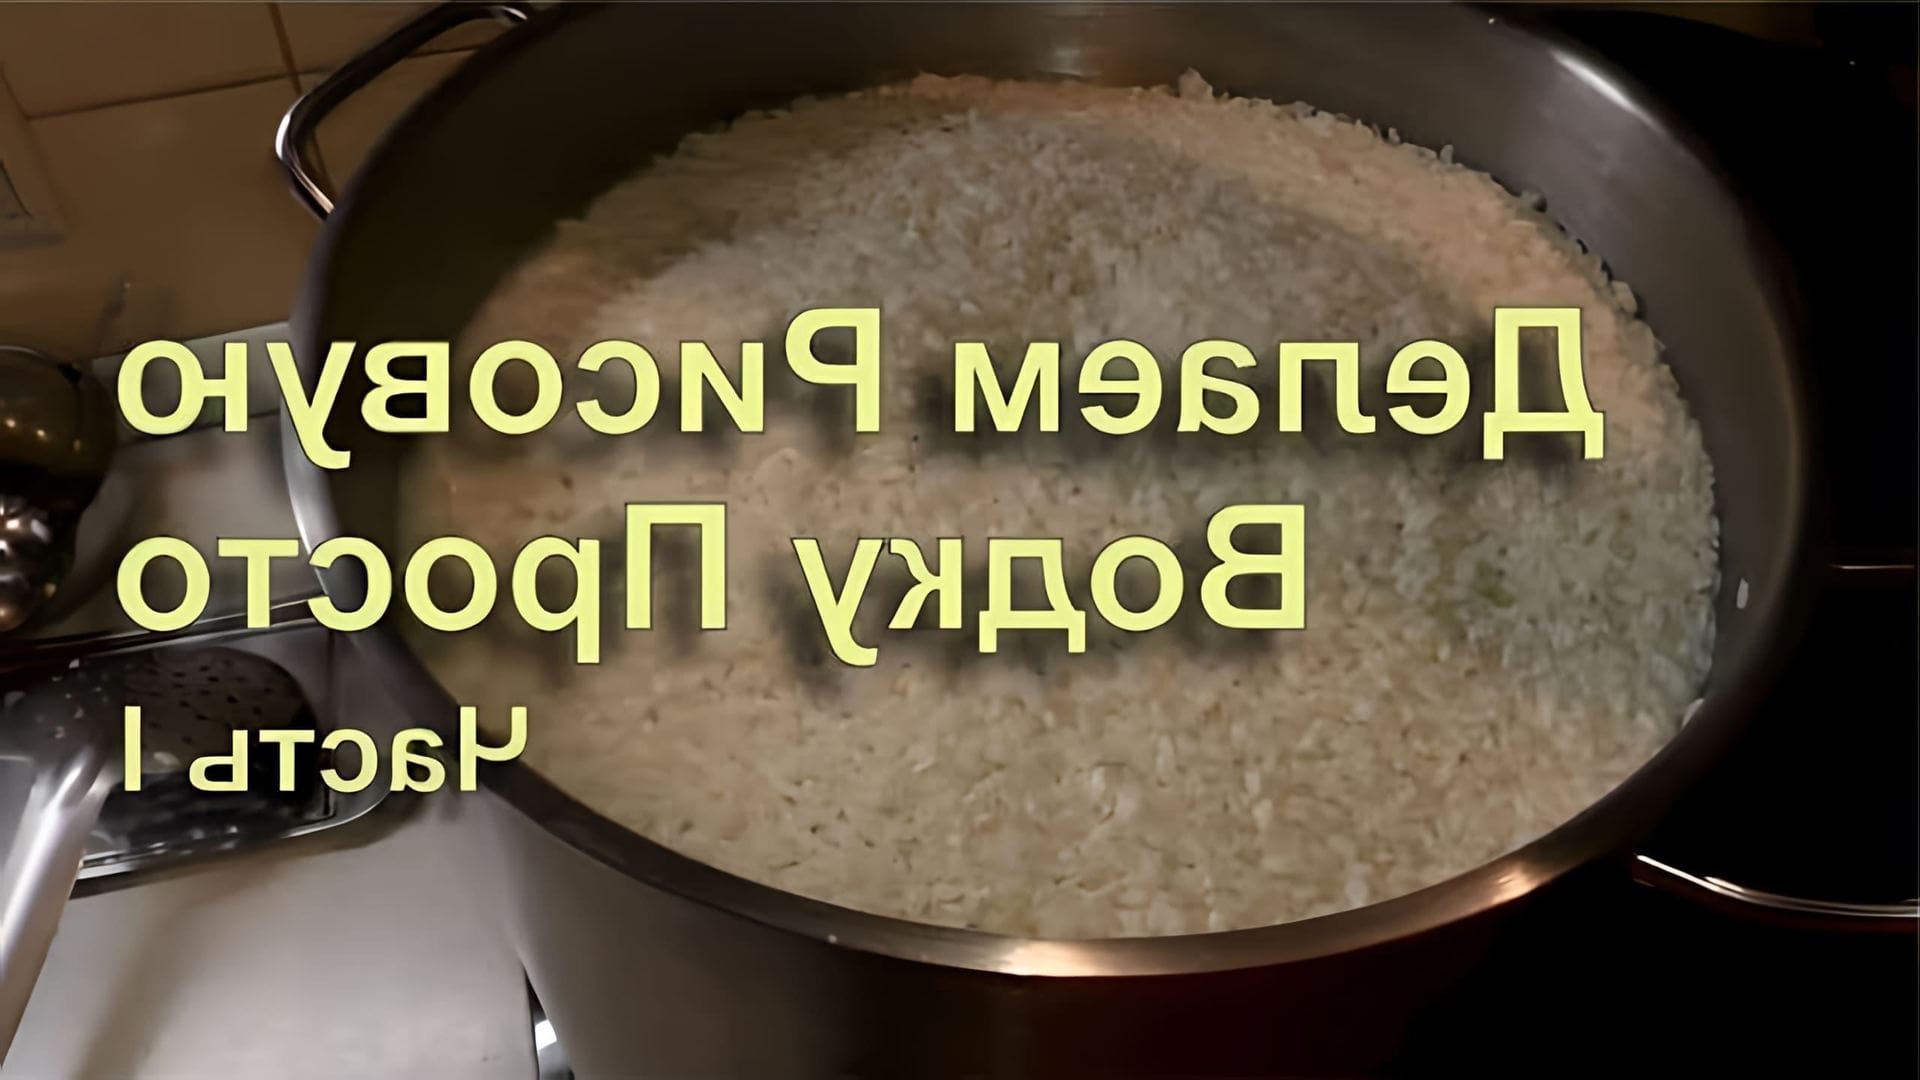 В данном видео демонстрируется процесс приготовления рисовой водки или рисового самогона